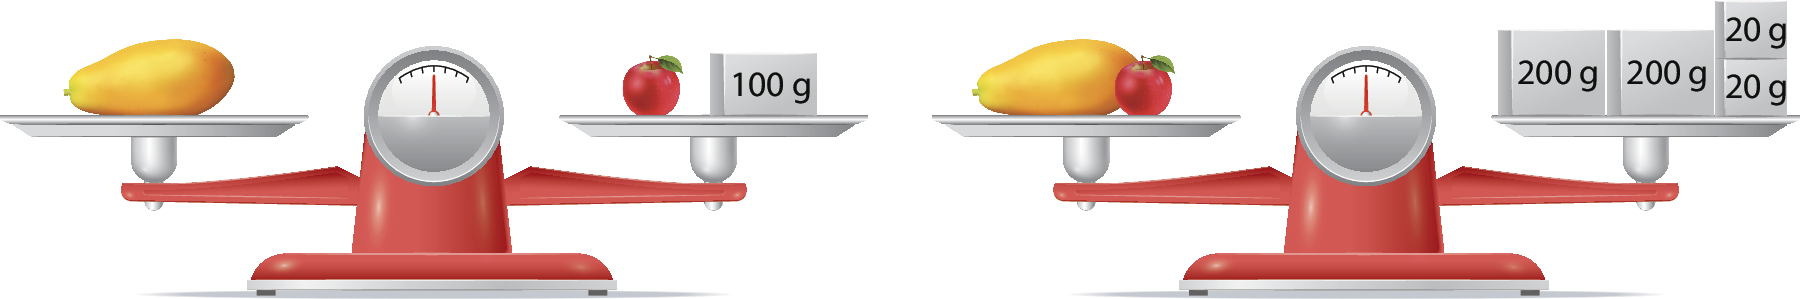 Ilustração. Balança vermelha de dois pratos. No prato da esquerda, um mamão. No prato da direita, uma maçã e um peso de 100 gramas. A balança está em equilíbrio. Ilustração. Balança de dois pratos. No prato da esquerda, um mamão e uma maçã. No prato da direita, dois pesos de 200 gramas cada e dois pesos de 20 gramas cada. A balança está em equilíbrio.